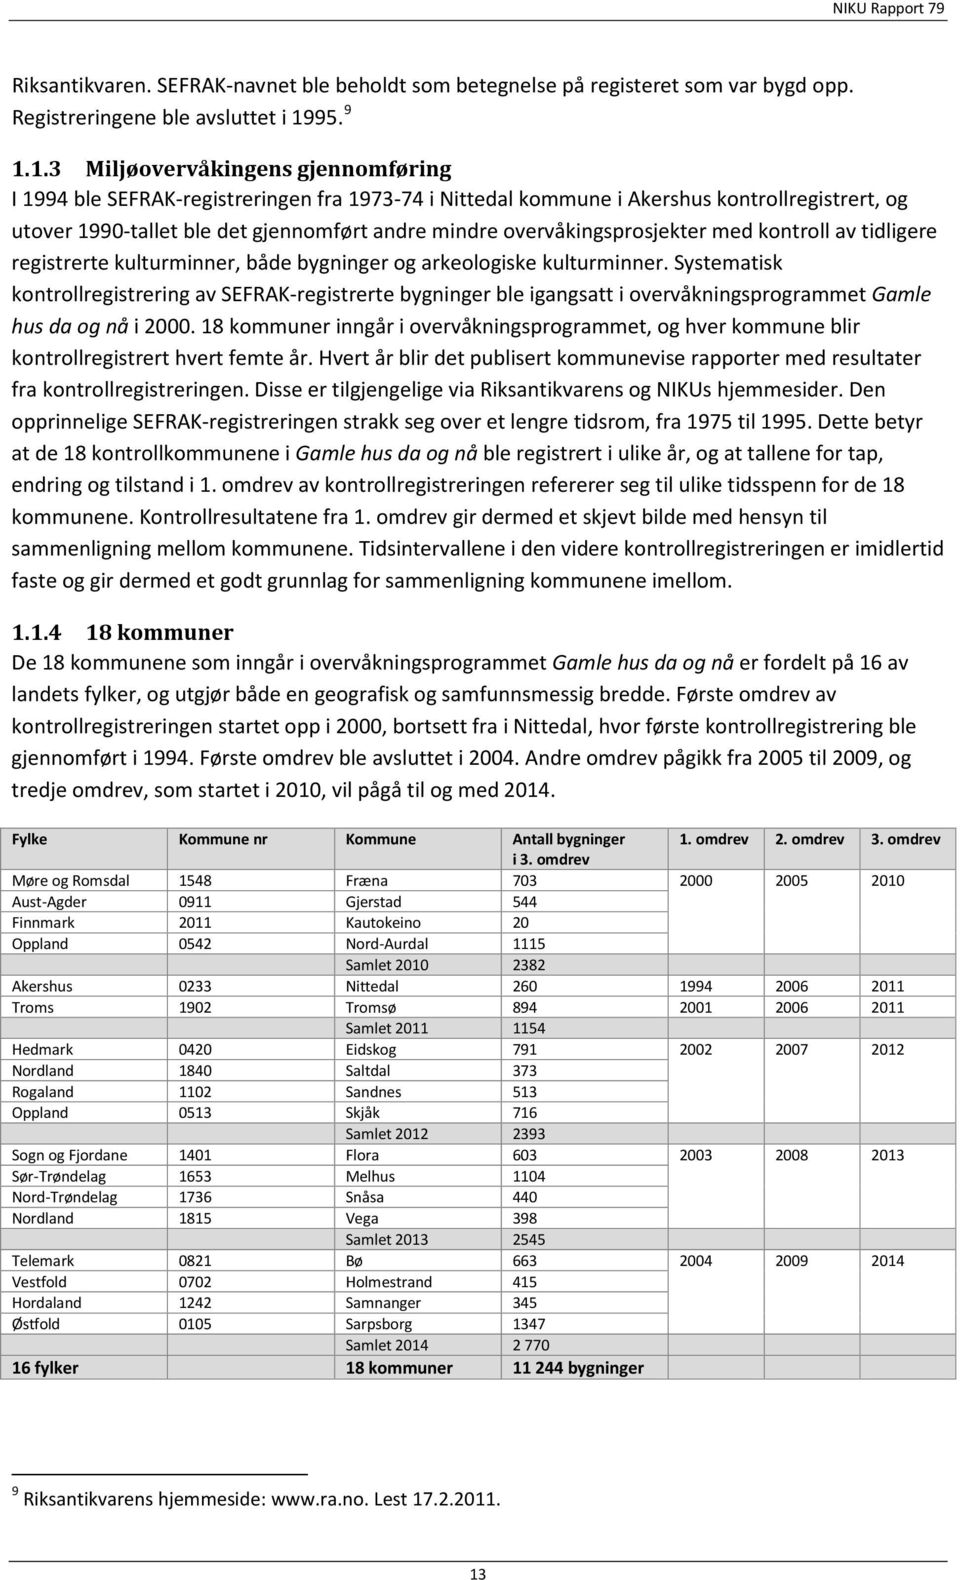 1.3 Miljøovervåkingens gjennomføring I 1994 ble SEFRAK-registreringen fra 1973-74 i Nittedal kommune i Akershus kontrollregistrert, og utover 1990-tallet ble det gjennomført andre mindre